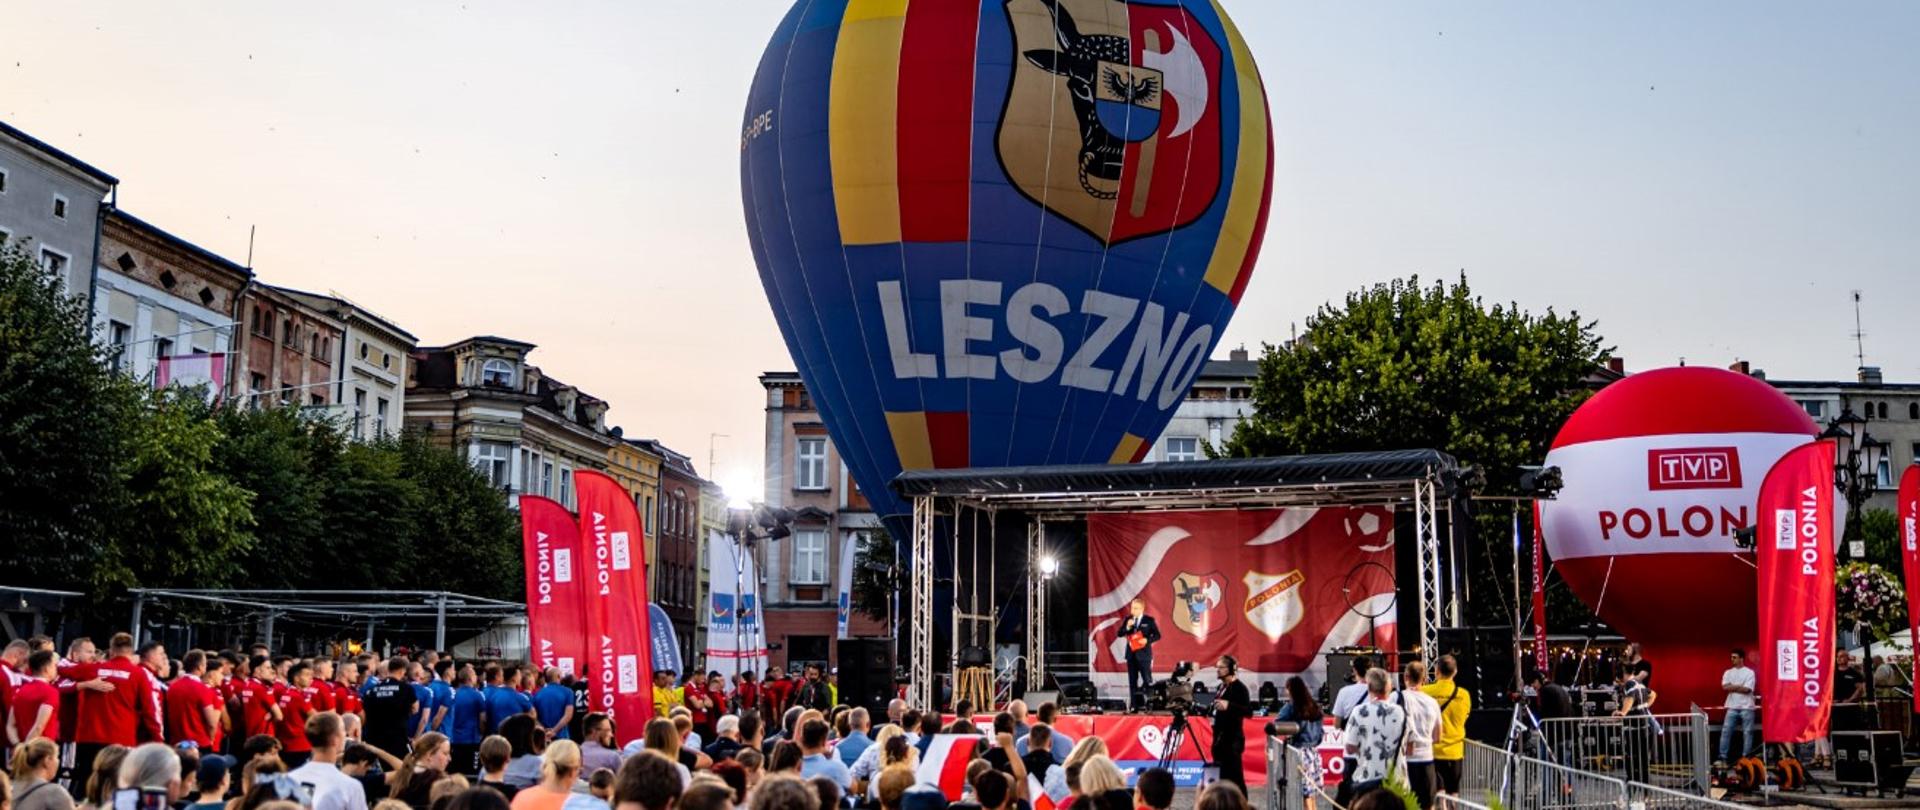 Ceremonia otwarcia II Mistrzostw Europy Drużyn Polonijnych w Piłce Nożnej w Lesznie.